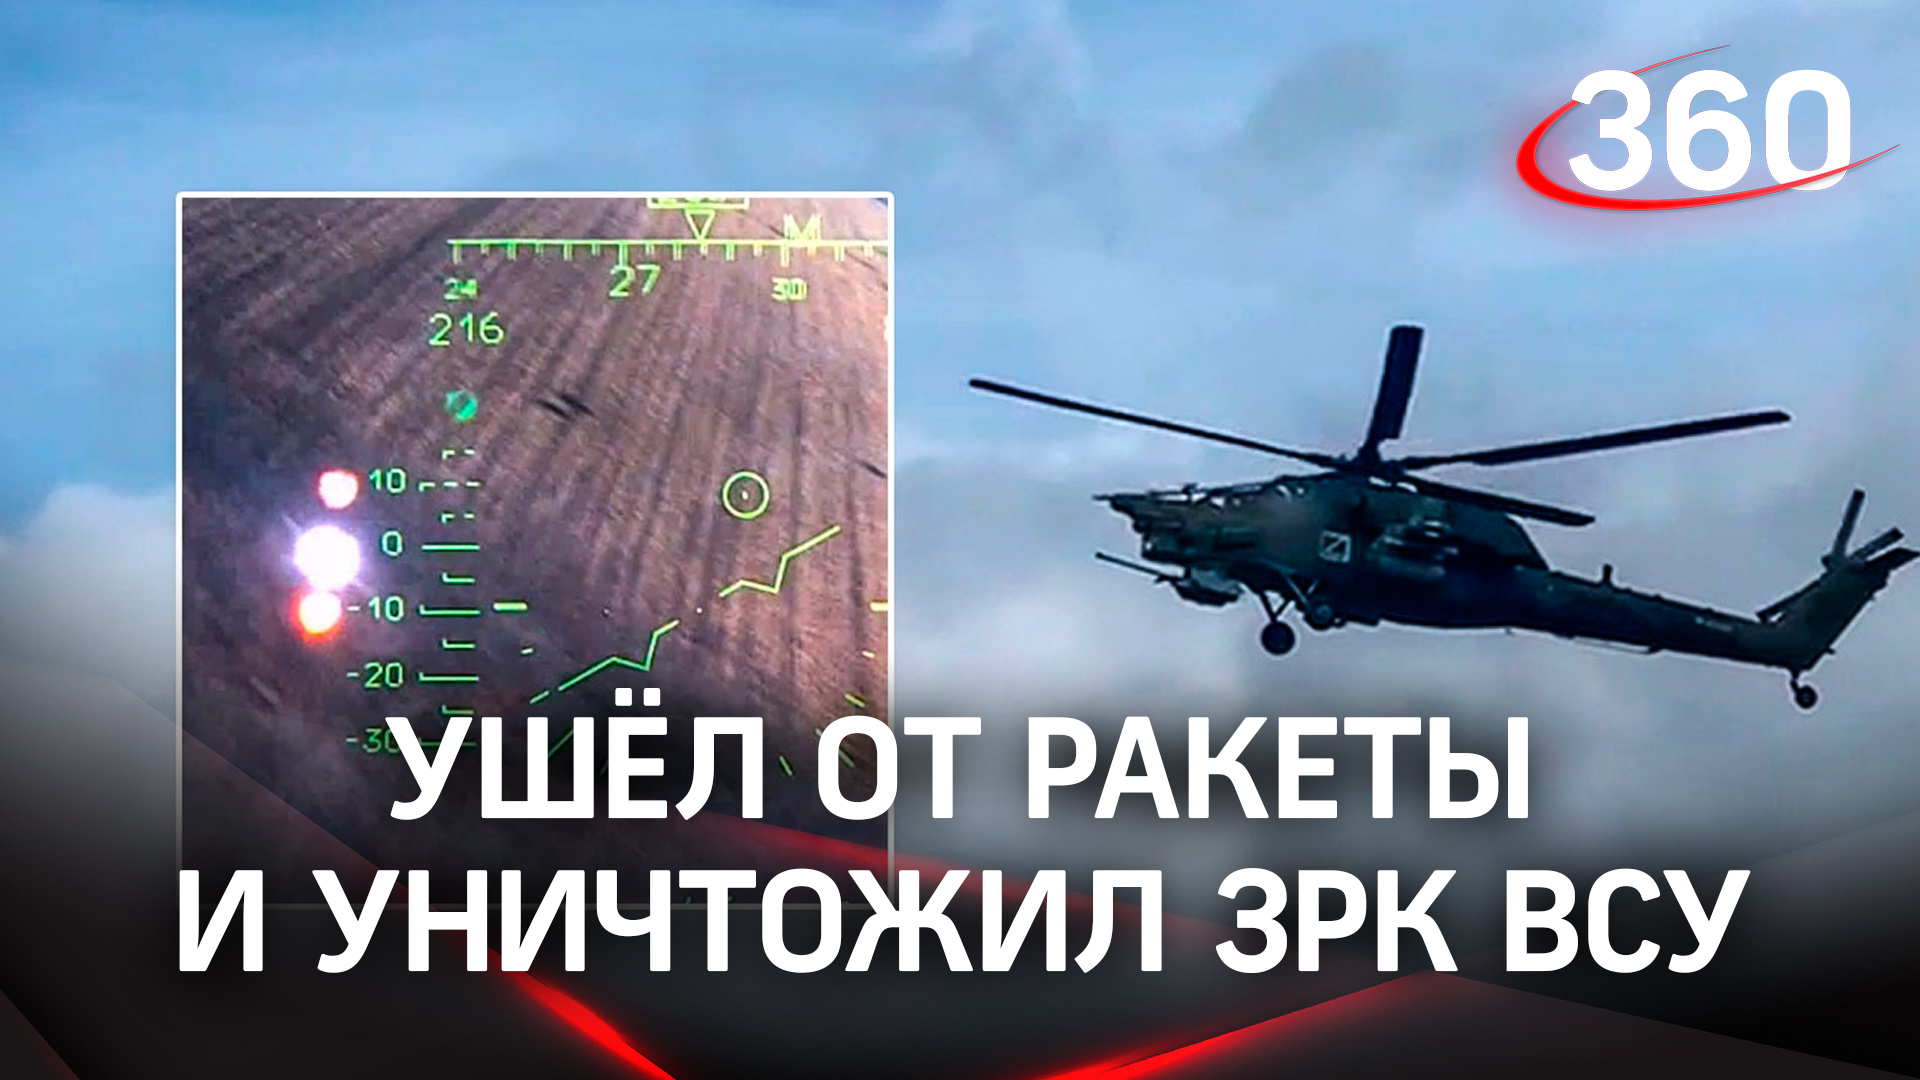 Ми-28 ВКС России ушёл от ракеты и уничтожил ответным огнём ЗРК ВСУ